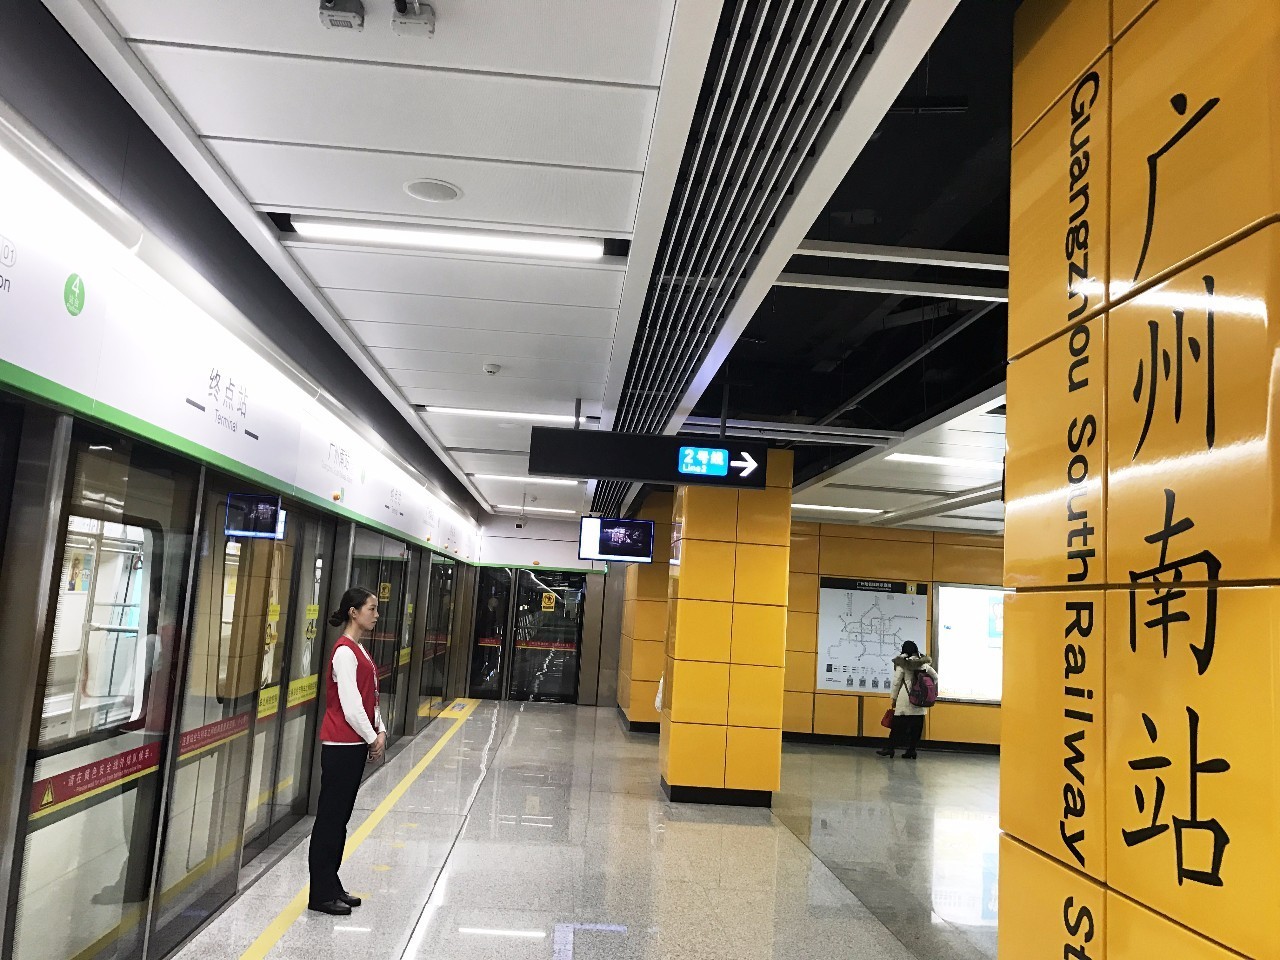 跑了23公里!广州3条新地铁,所有最新出口介绍一一奉上!